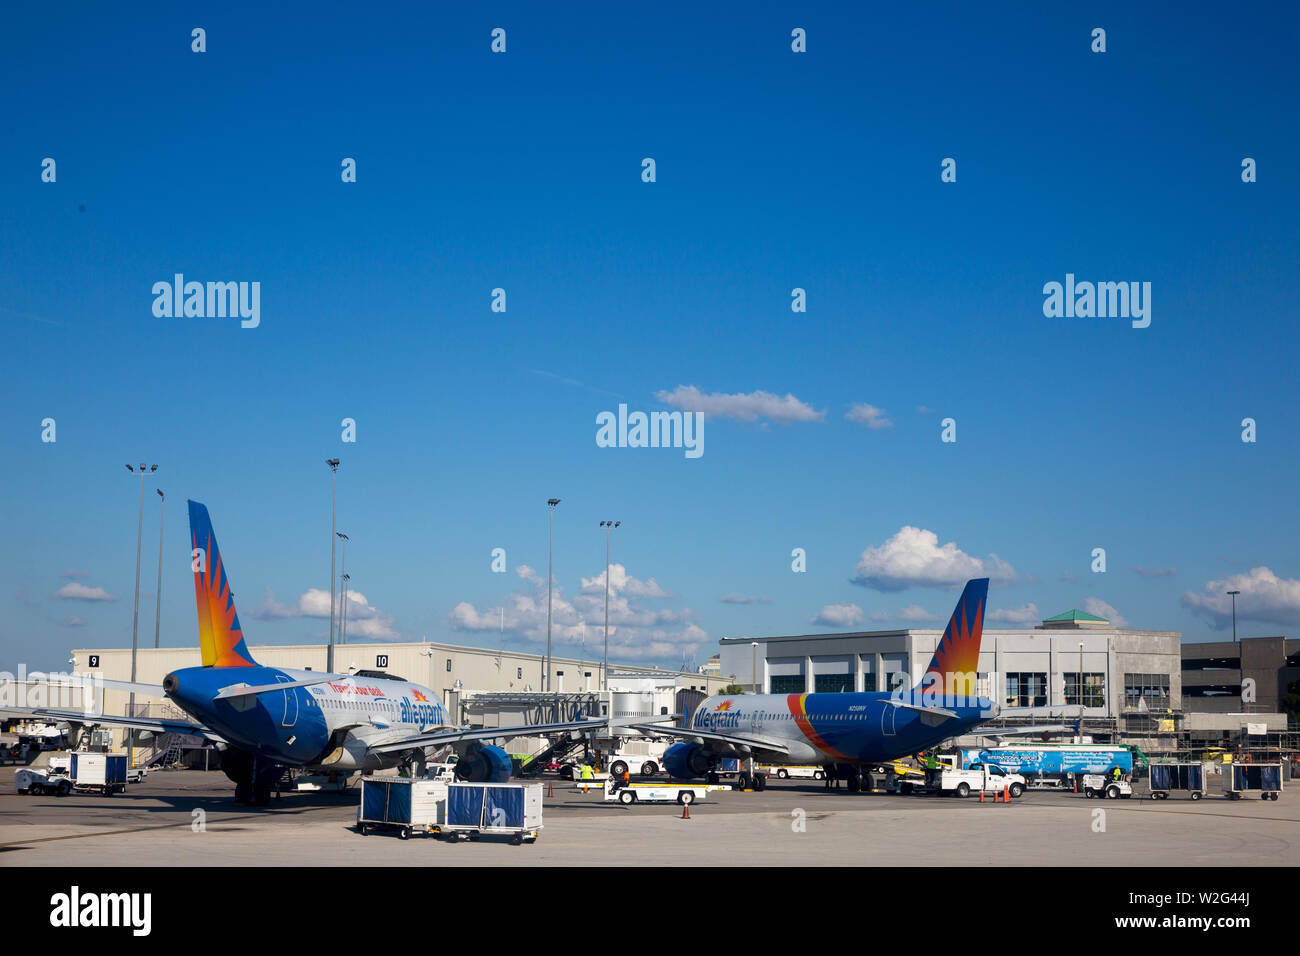 Deux d'Allegiant Air's flotte d'Airbus A320 avions à réaction sont garés à l'aéroport international d'Orlando Sanford à Sanford, en Floride, aux États-Unis. Banque D'Images